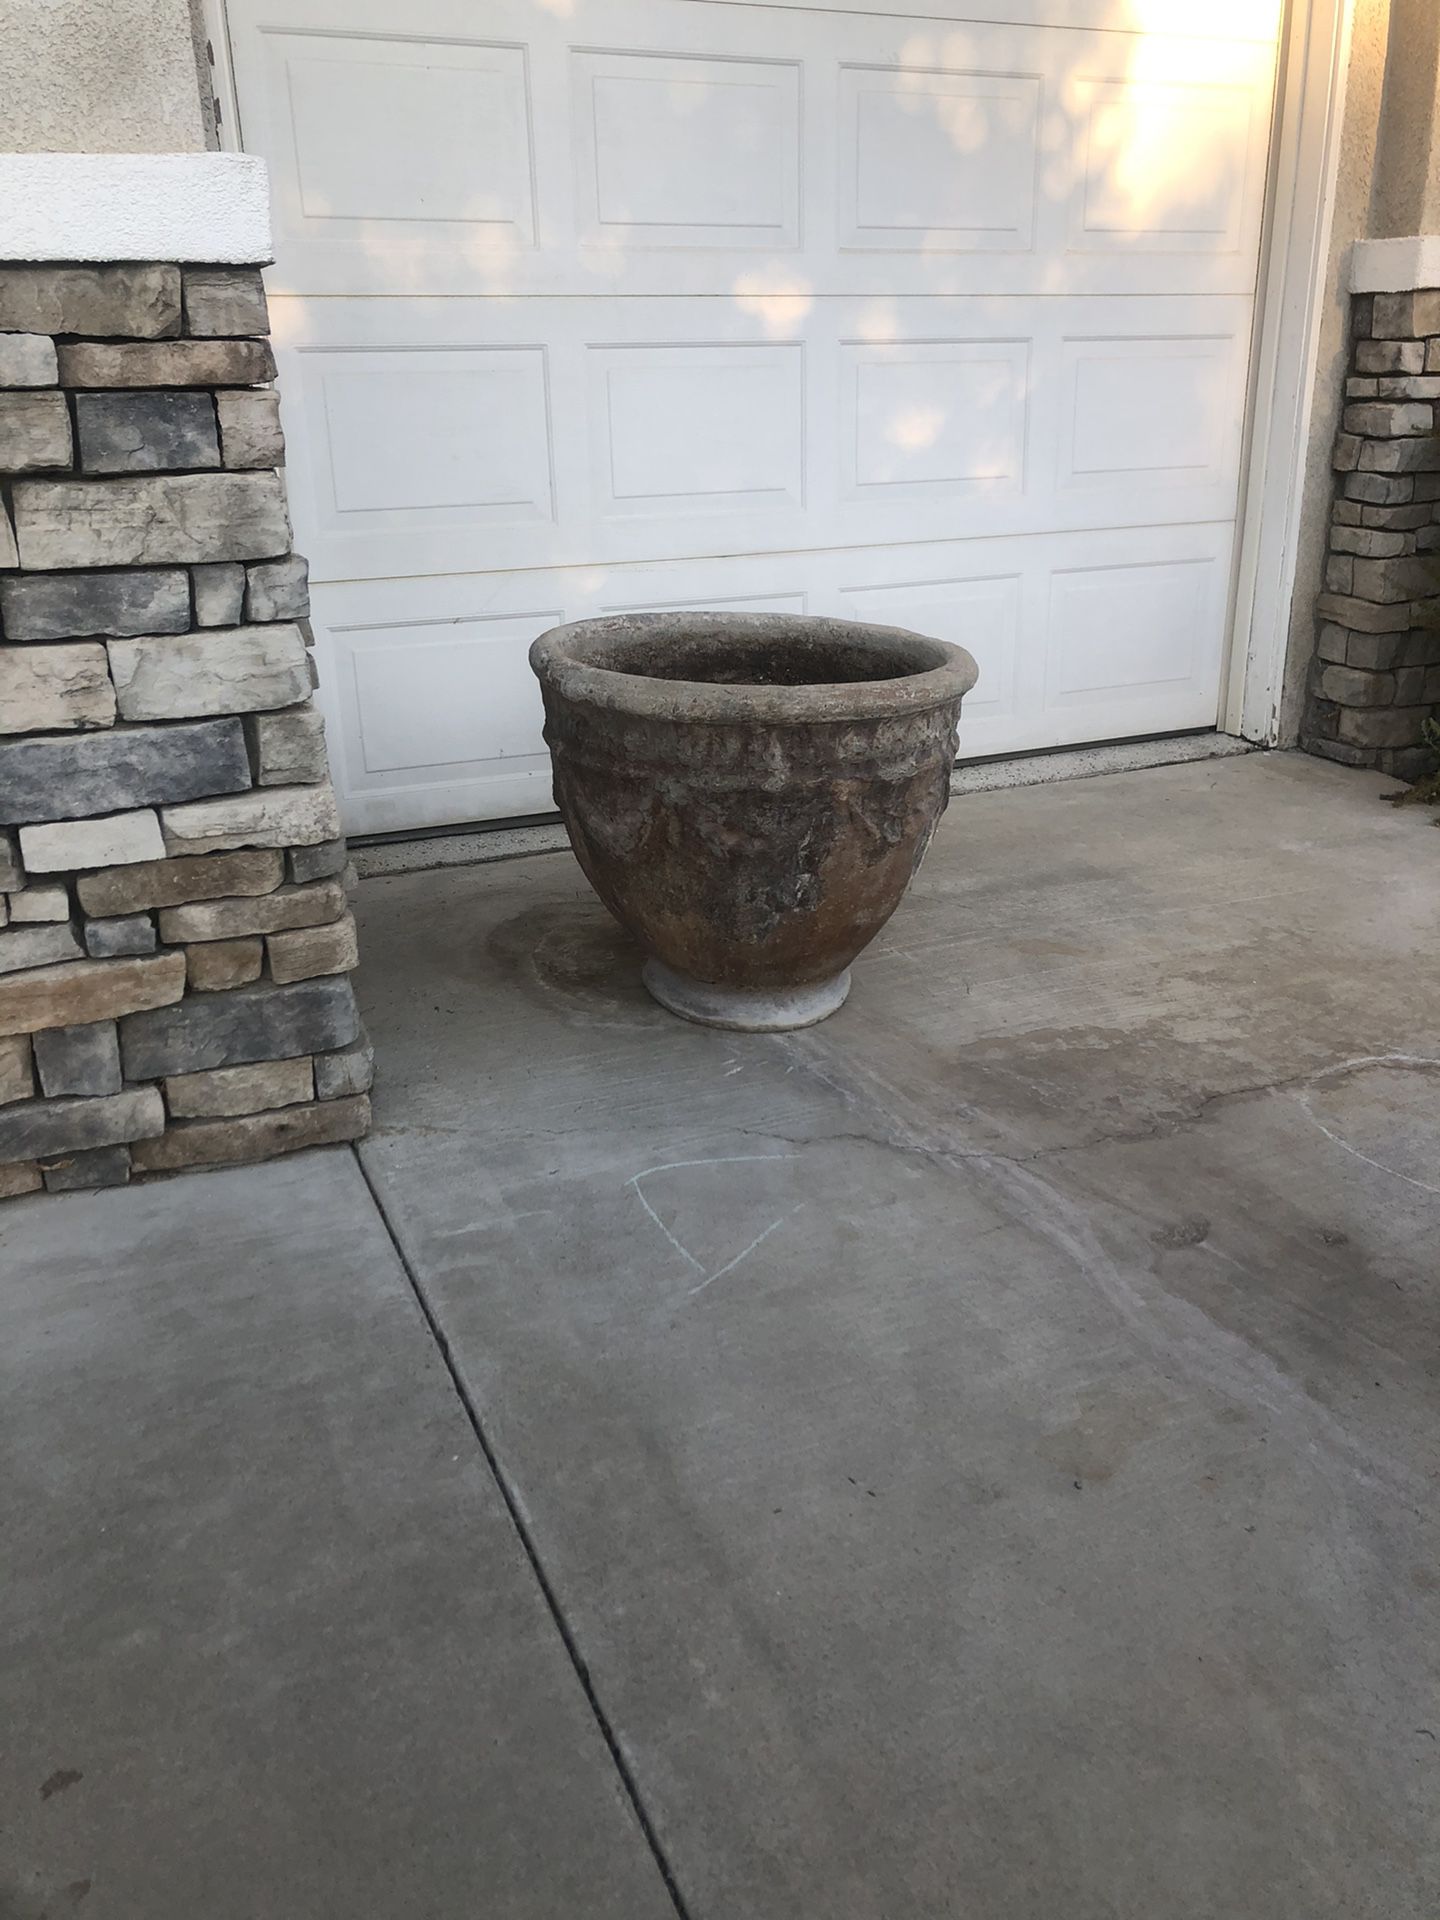 3 concrete pots 24”x 24” perfect for citrus 🍊